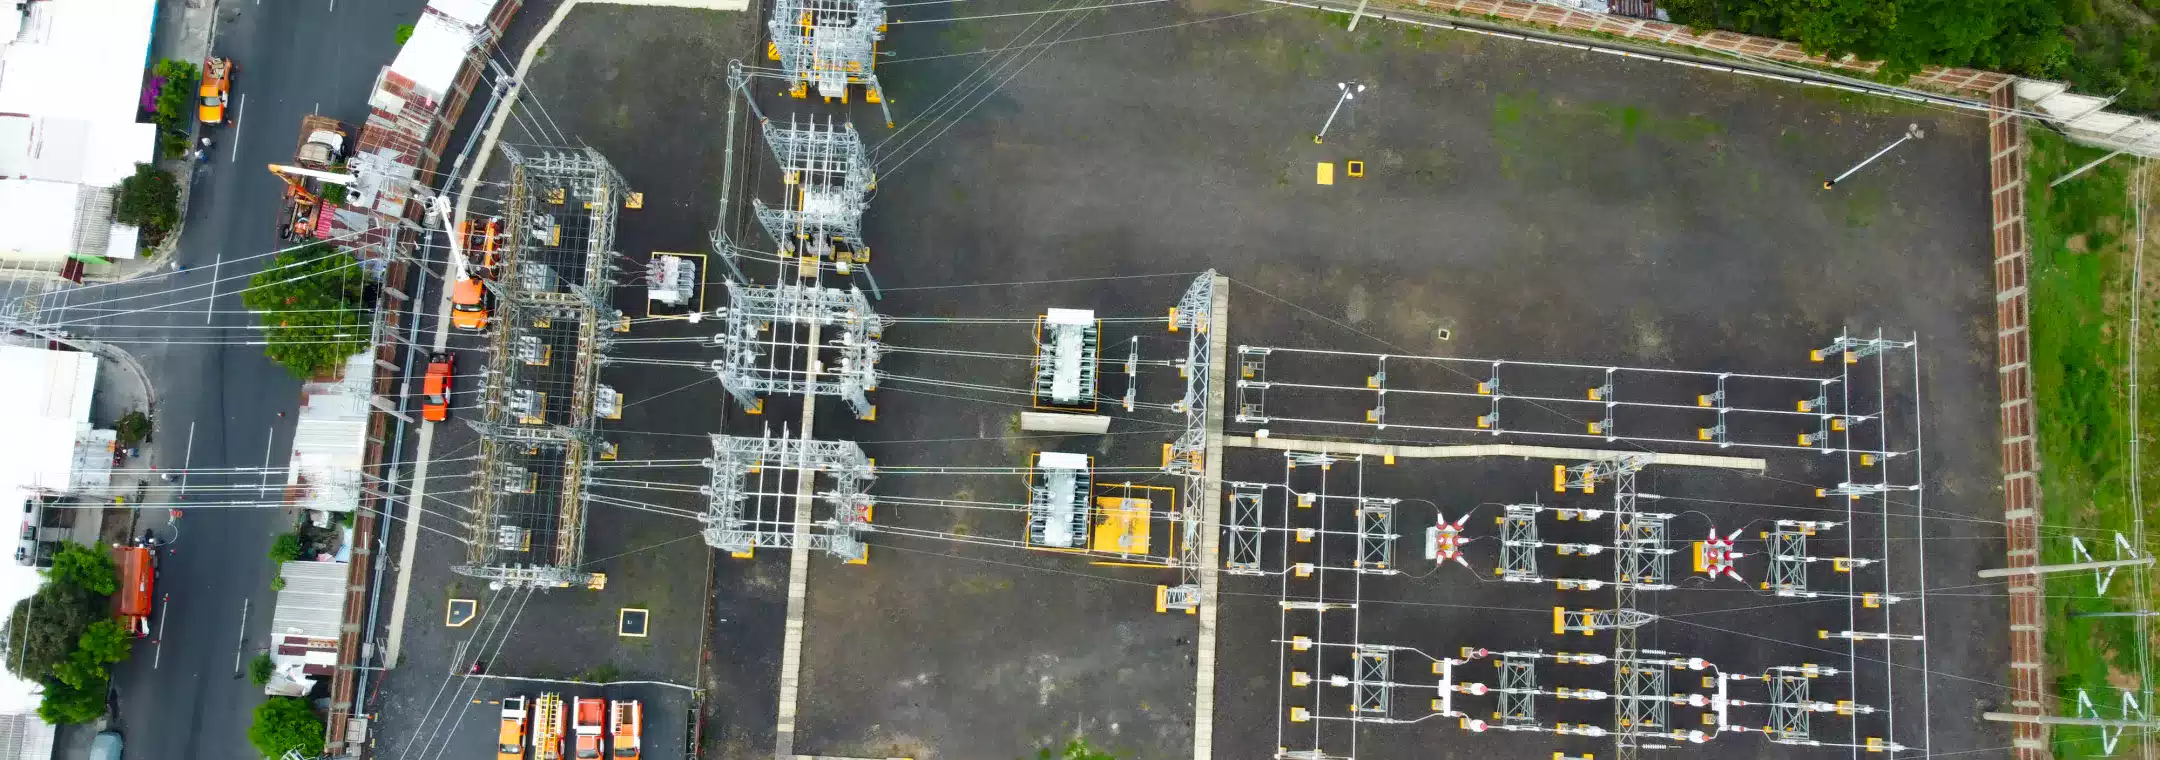 AES-El-Salvador-AES CAESS invierte US$ 200 mil en renovación y mantenimiento de red eléctrica en zona central